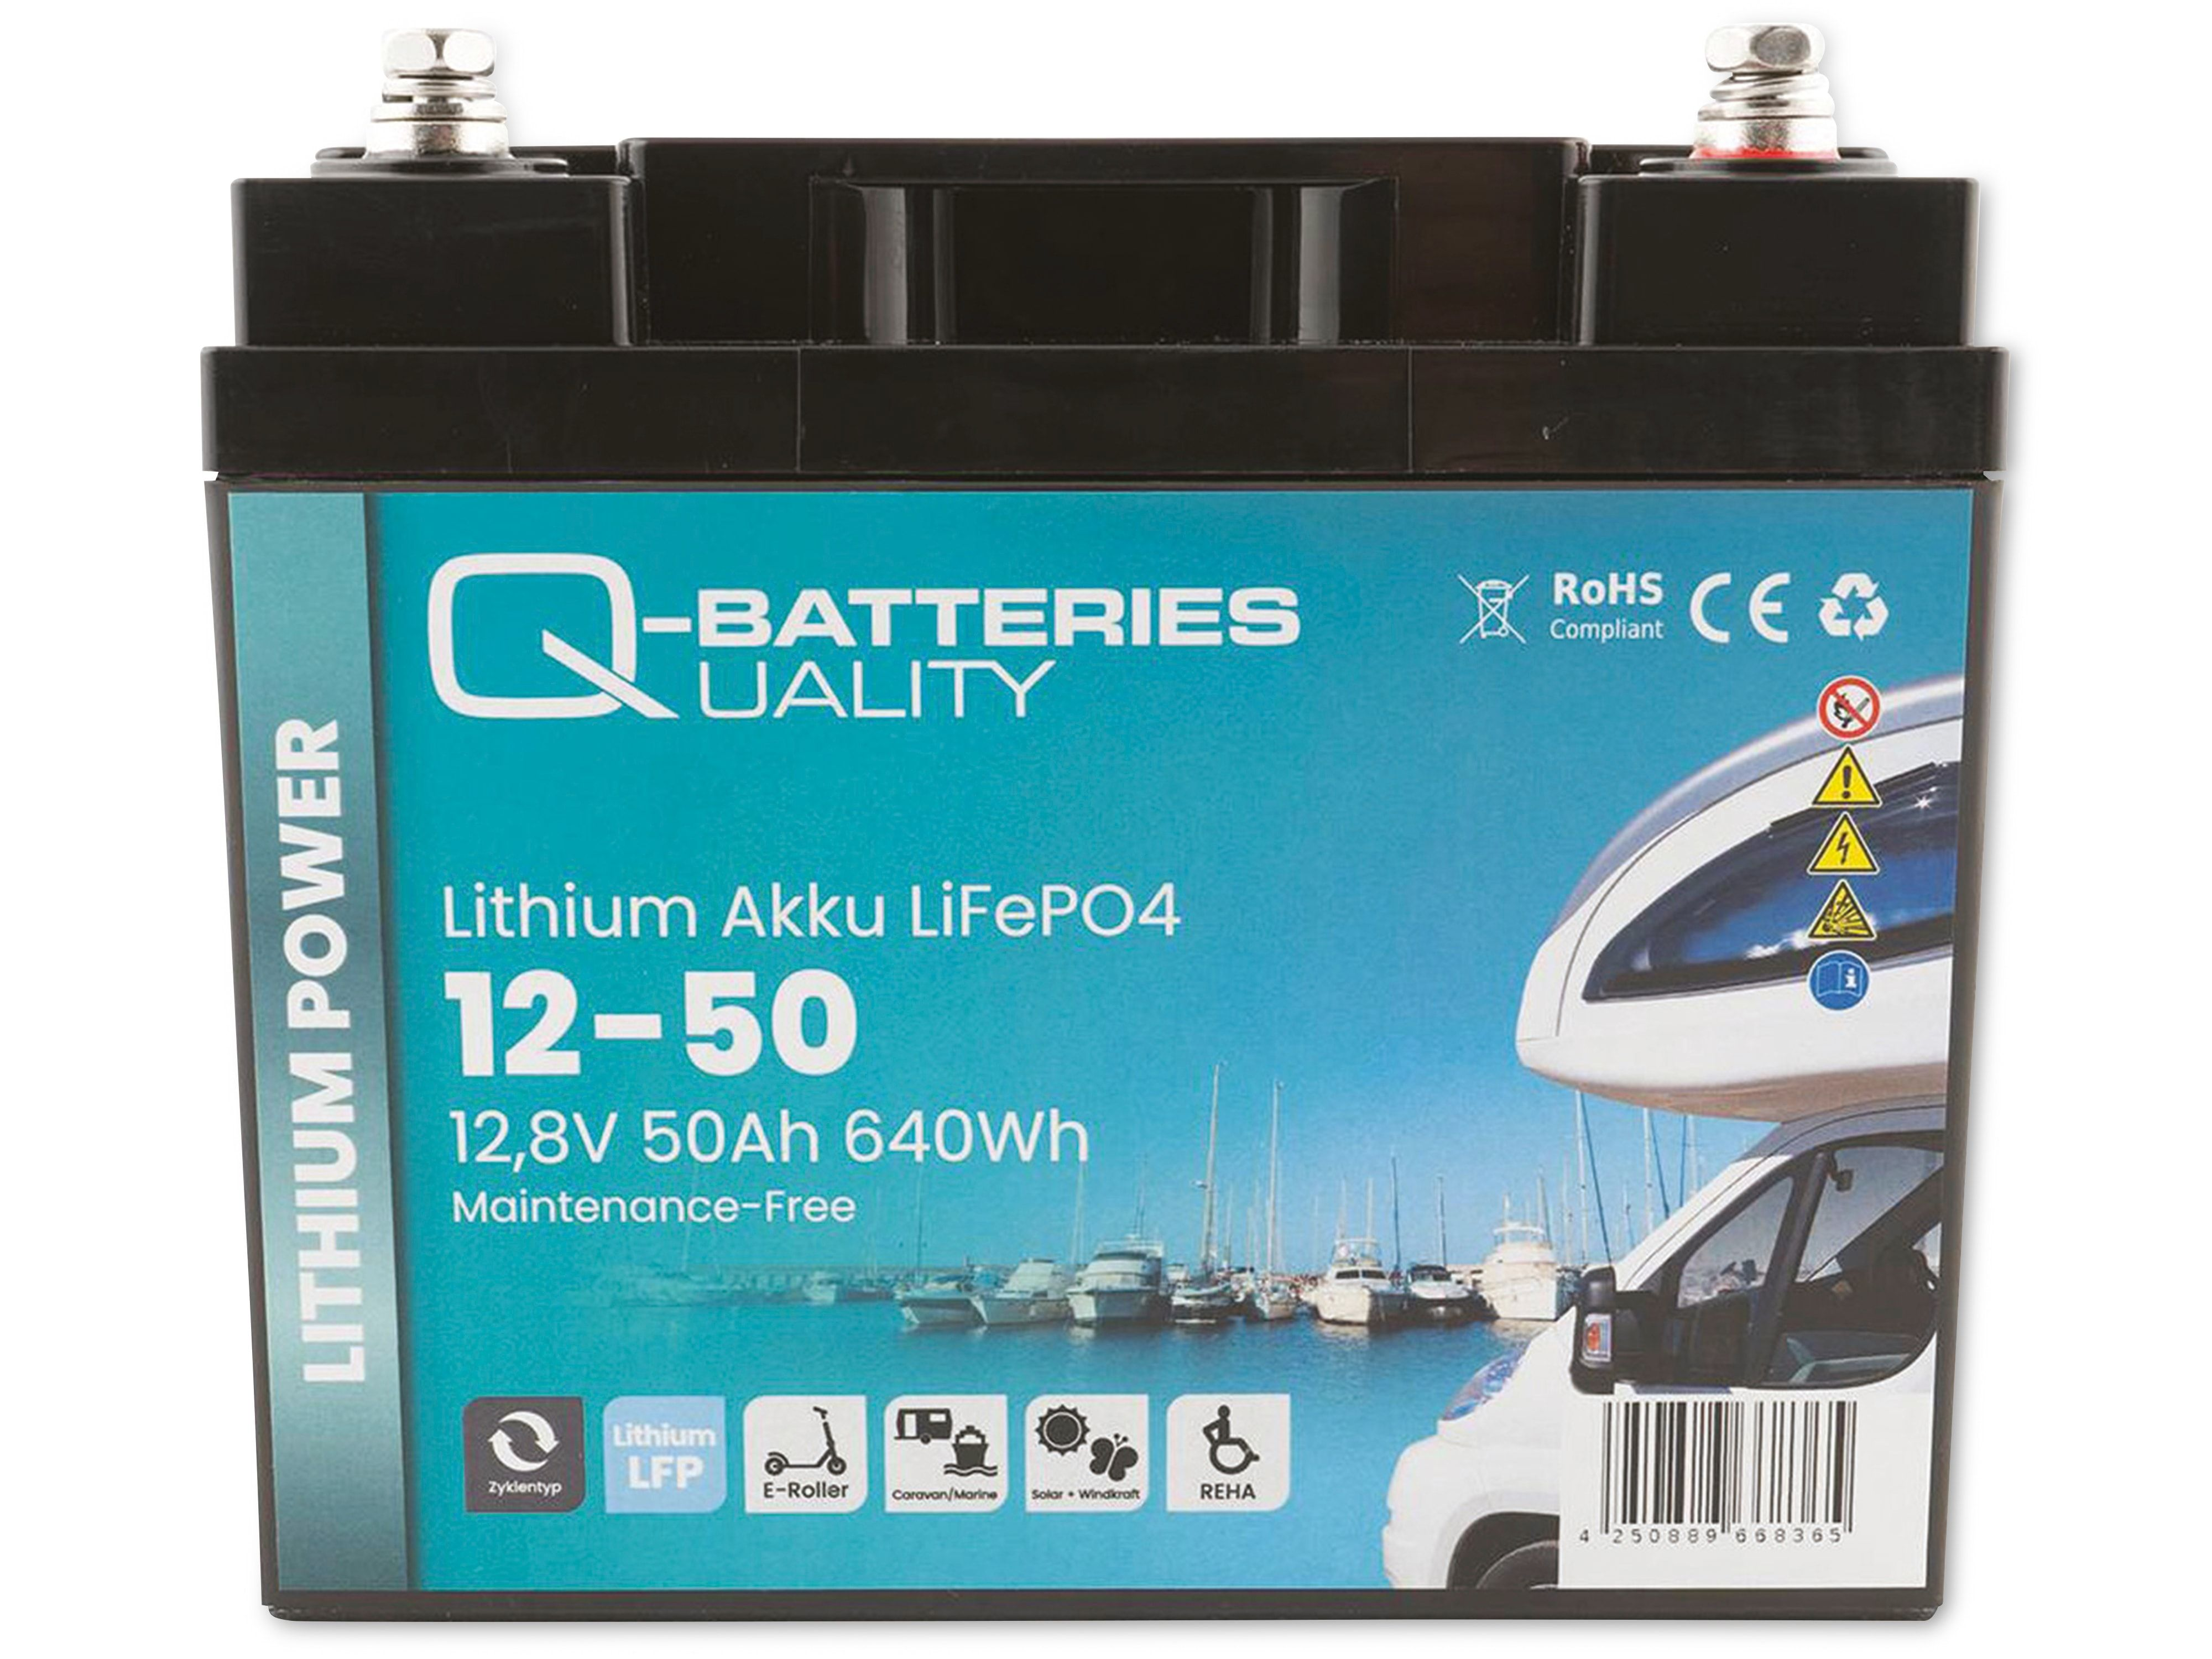 Q-BATTERIES Lithium Akku 12-50 12,8V, Batterie Akku 50Ah Lithium-Eisenphosphat LiFePO4 640Wh